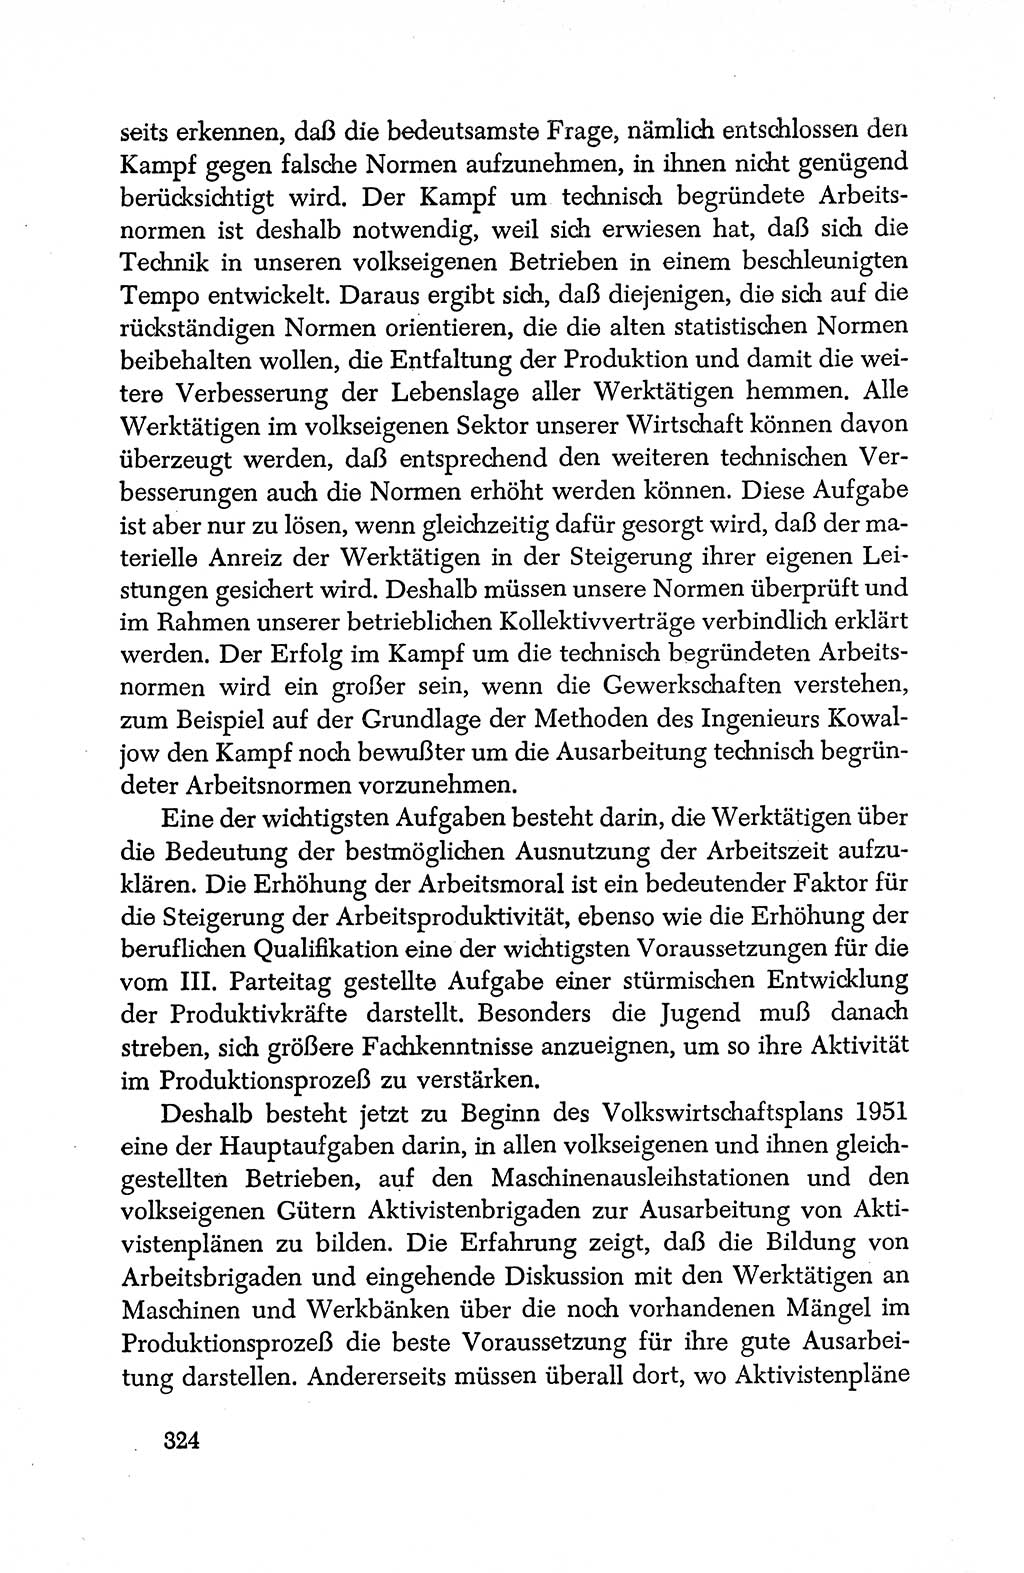 Dokumente der Sozialistischen Einheitspartei Deutschlands (SED) [Deutsche Demokratische Republik (DDR)] 1950-1952, Seite 324 (Dok. SED DDR 1950-1952, S. 324)